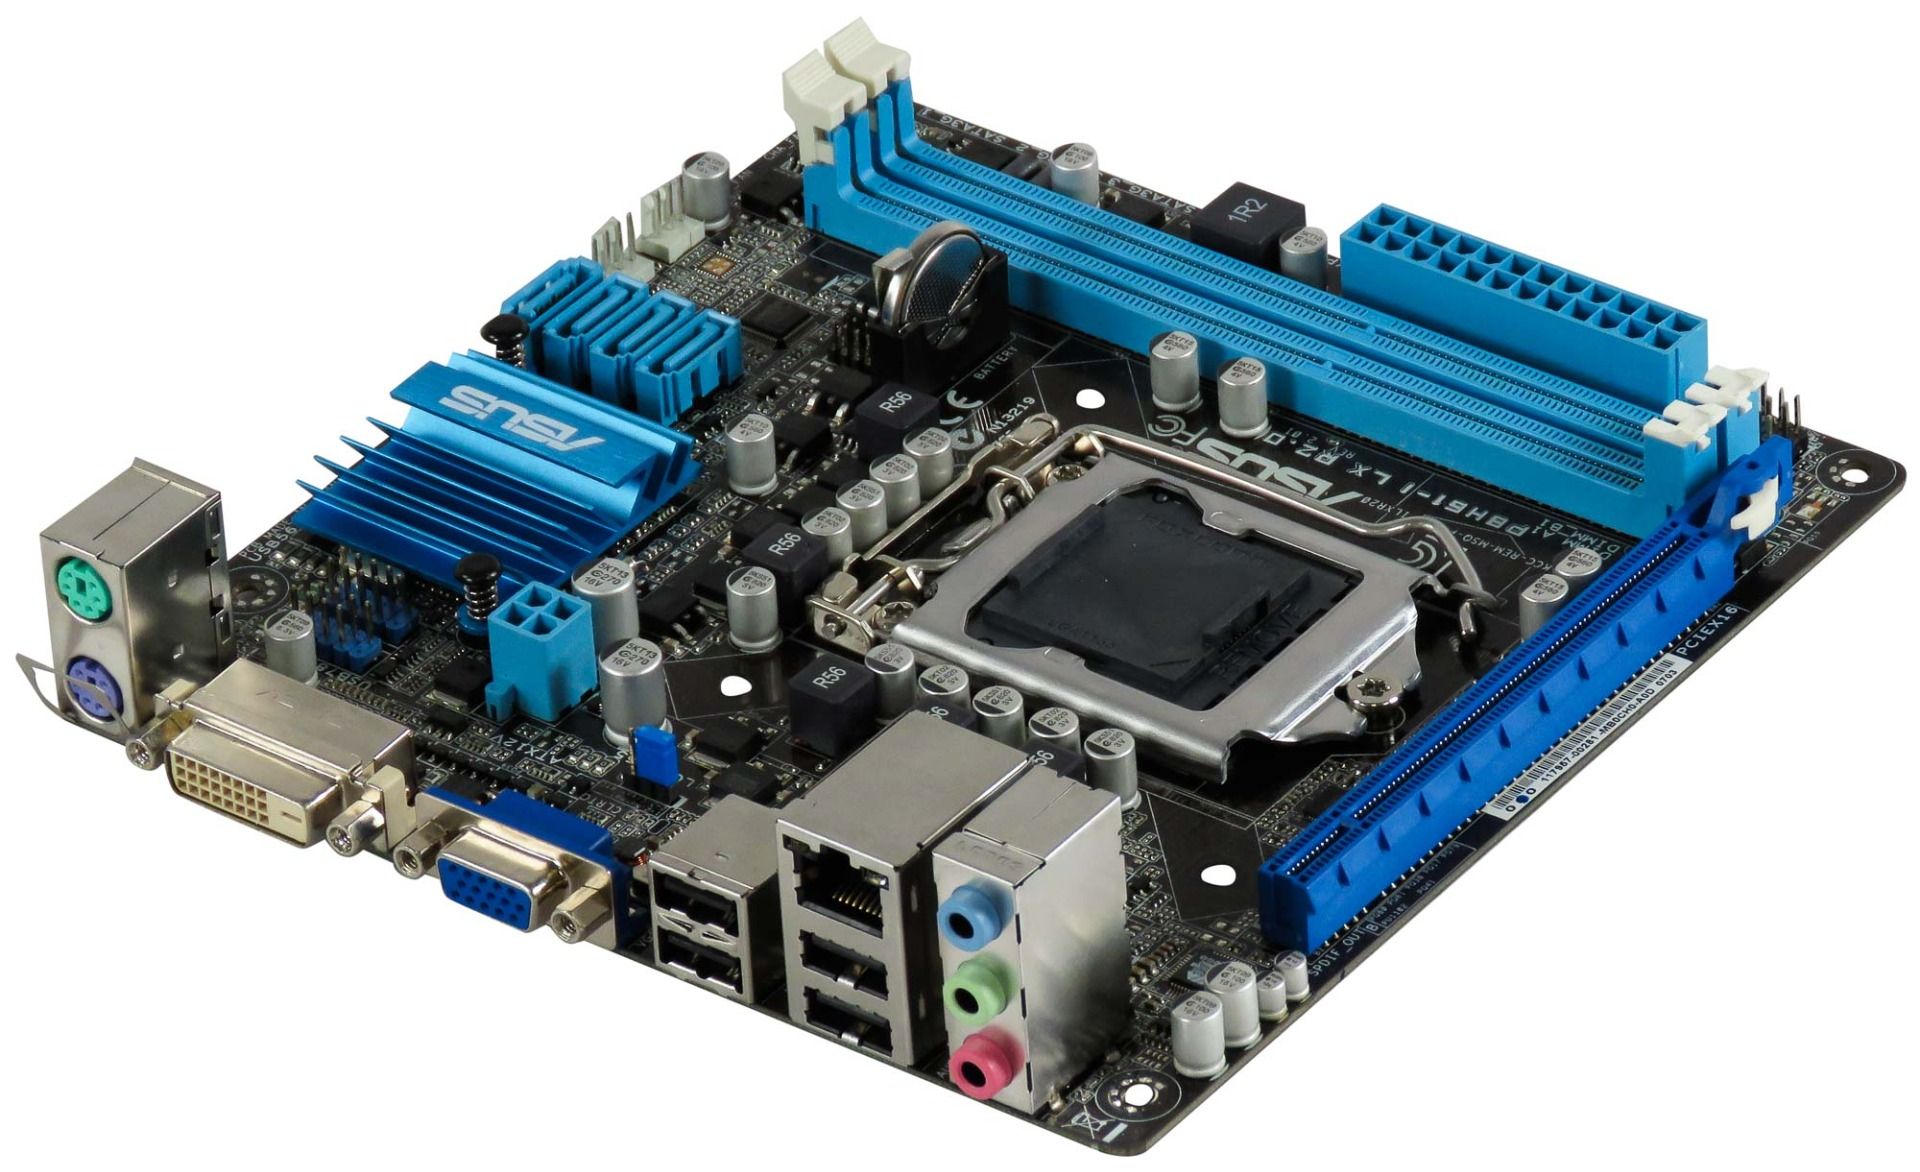 ASUS P8H61-I LX R2.0 s.1155 DDR3 MINI-ITX BOX